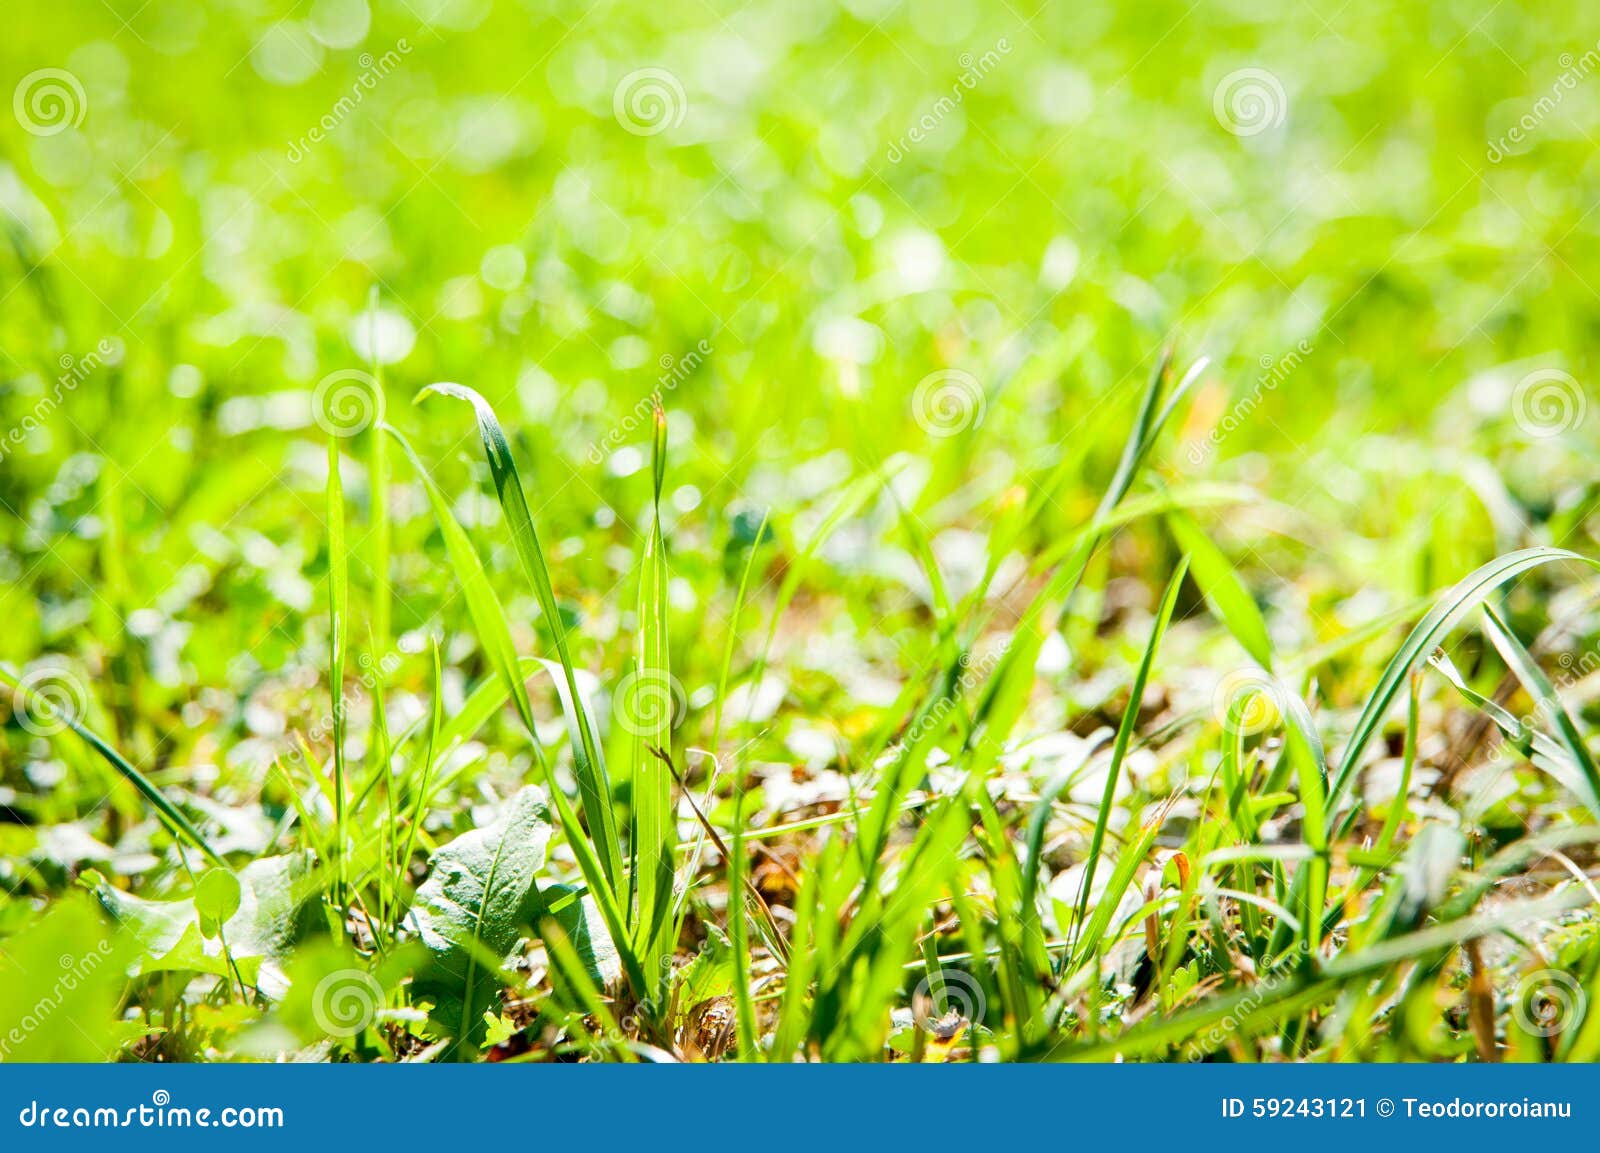 Detalj för gräsfält. Gräs i ett fält i detaljfunktionsläge